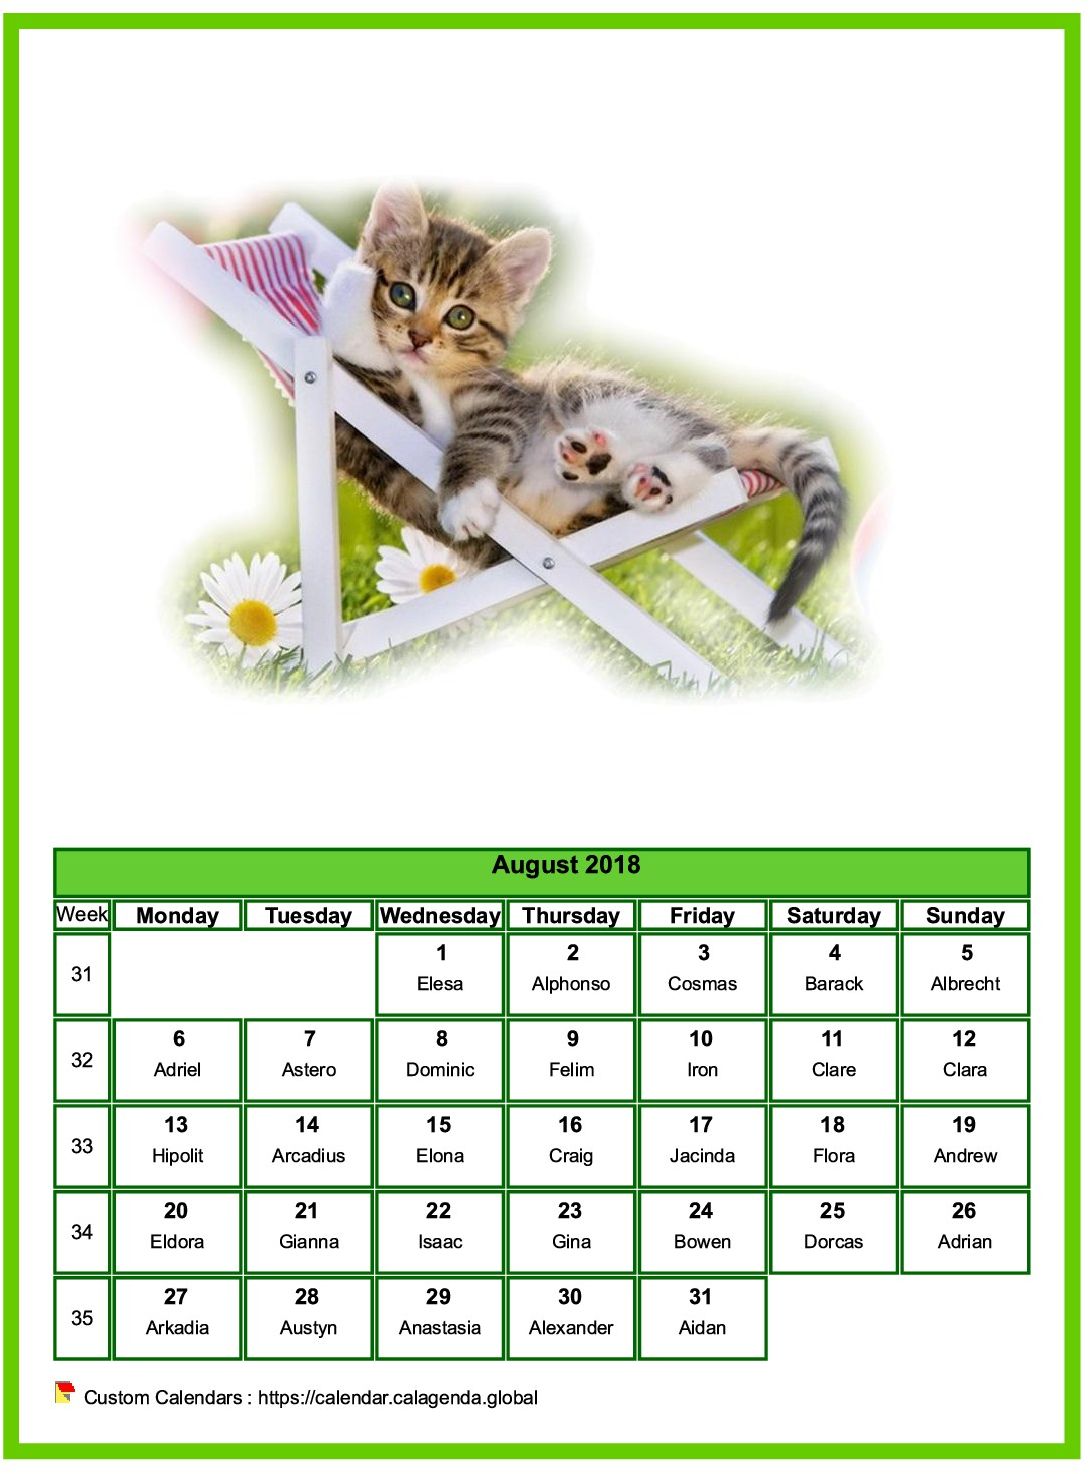 Calendar August 2018 cats